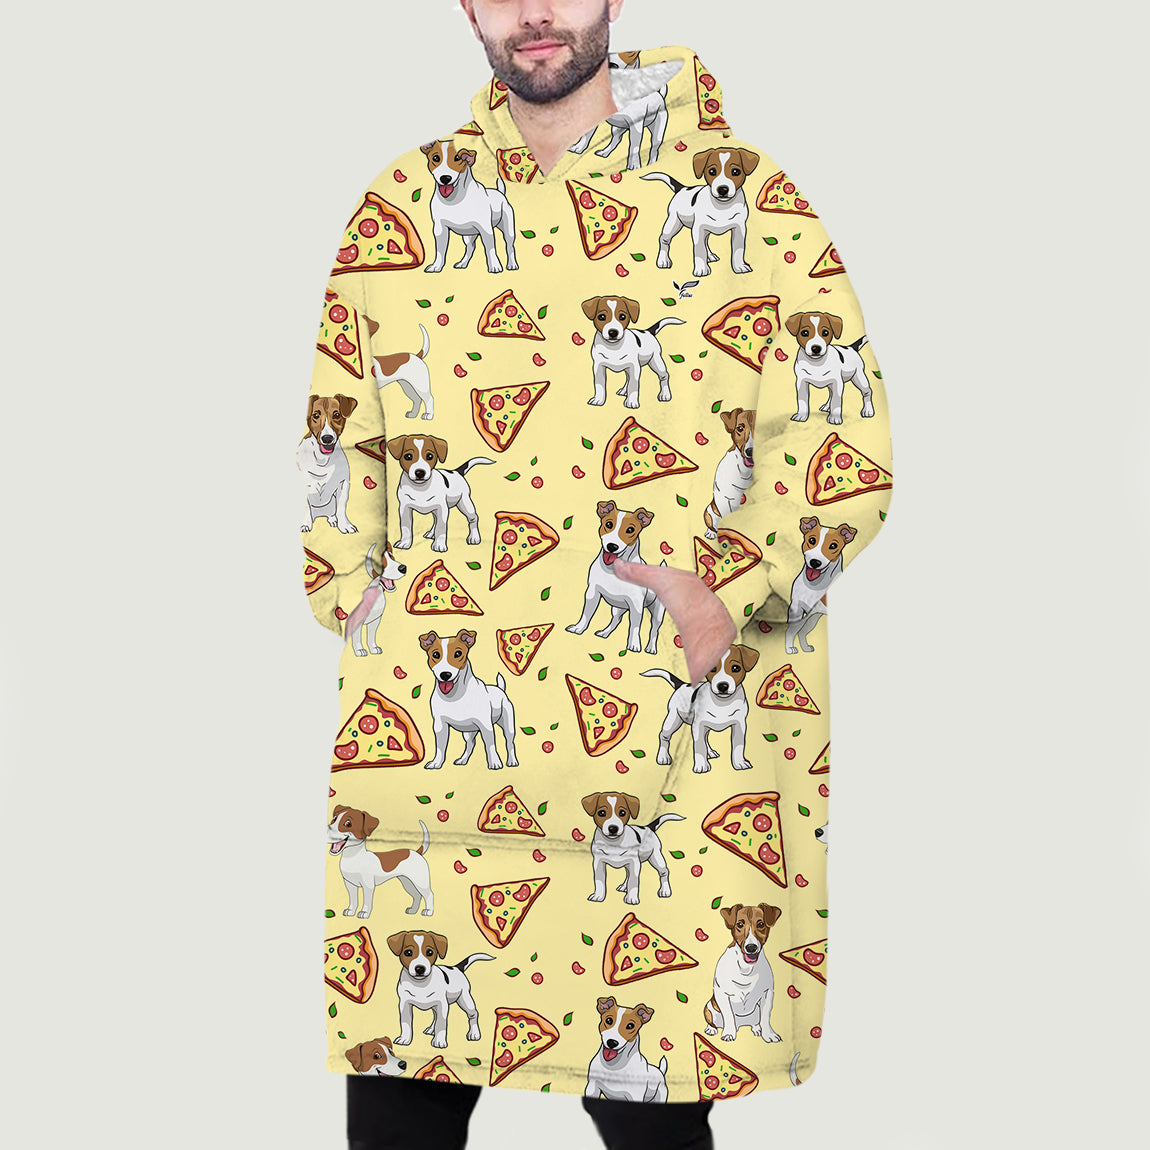 J'aime les pizzas - Jack Russell Terrier Couverture polaire à capuche